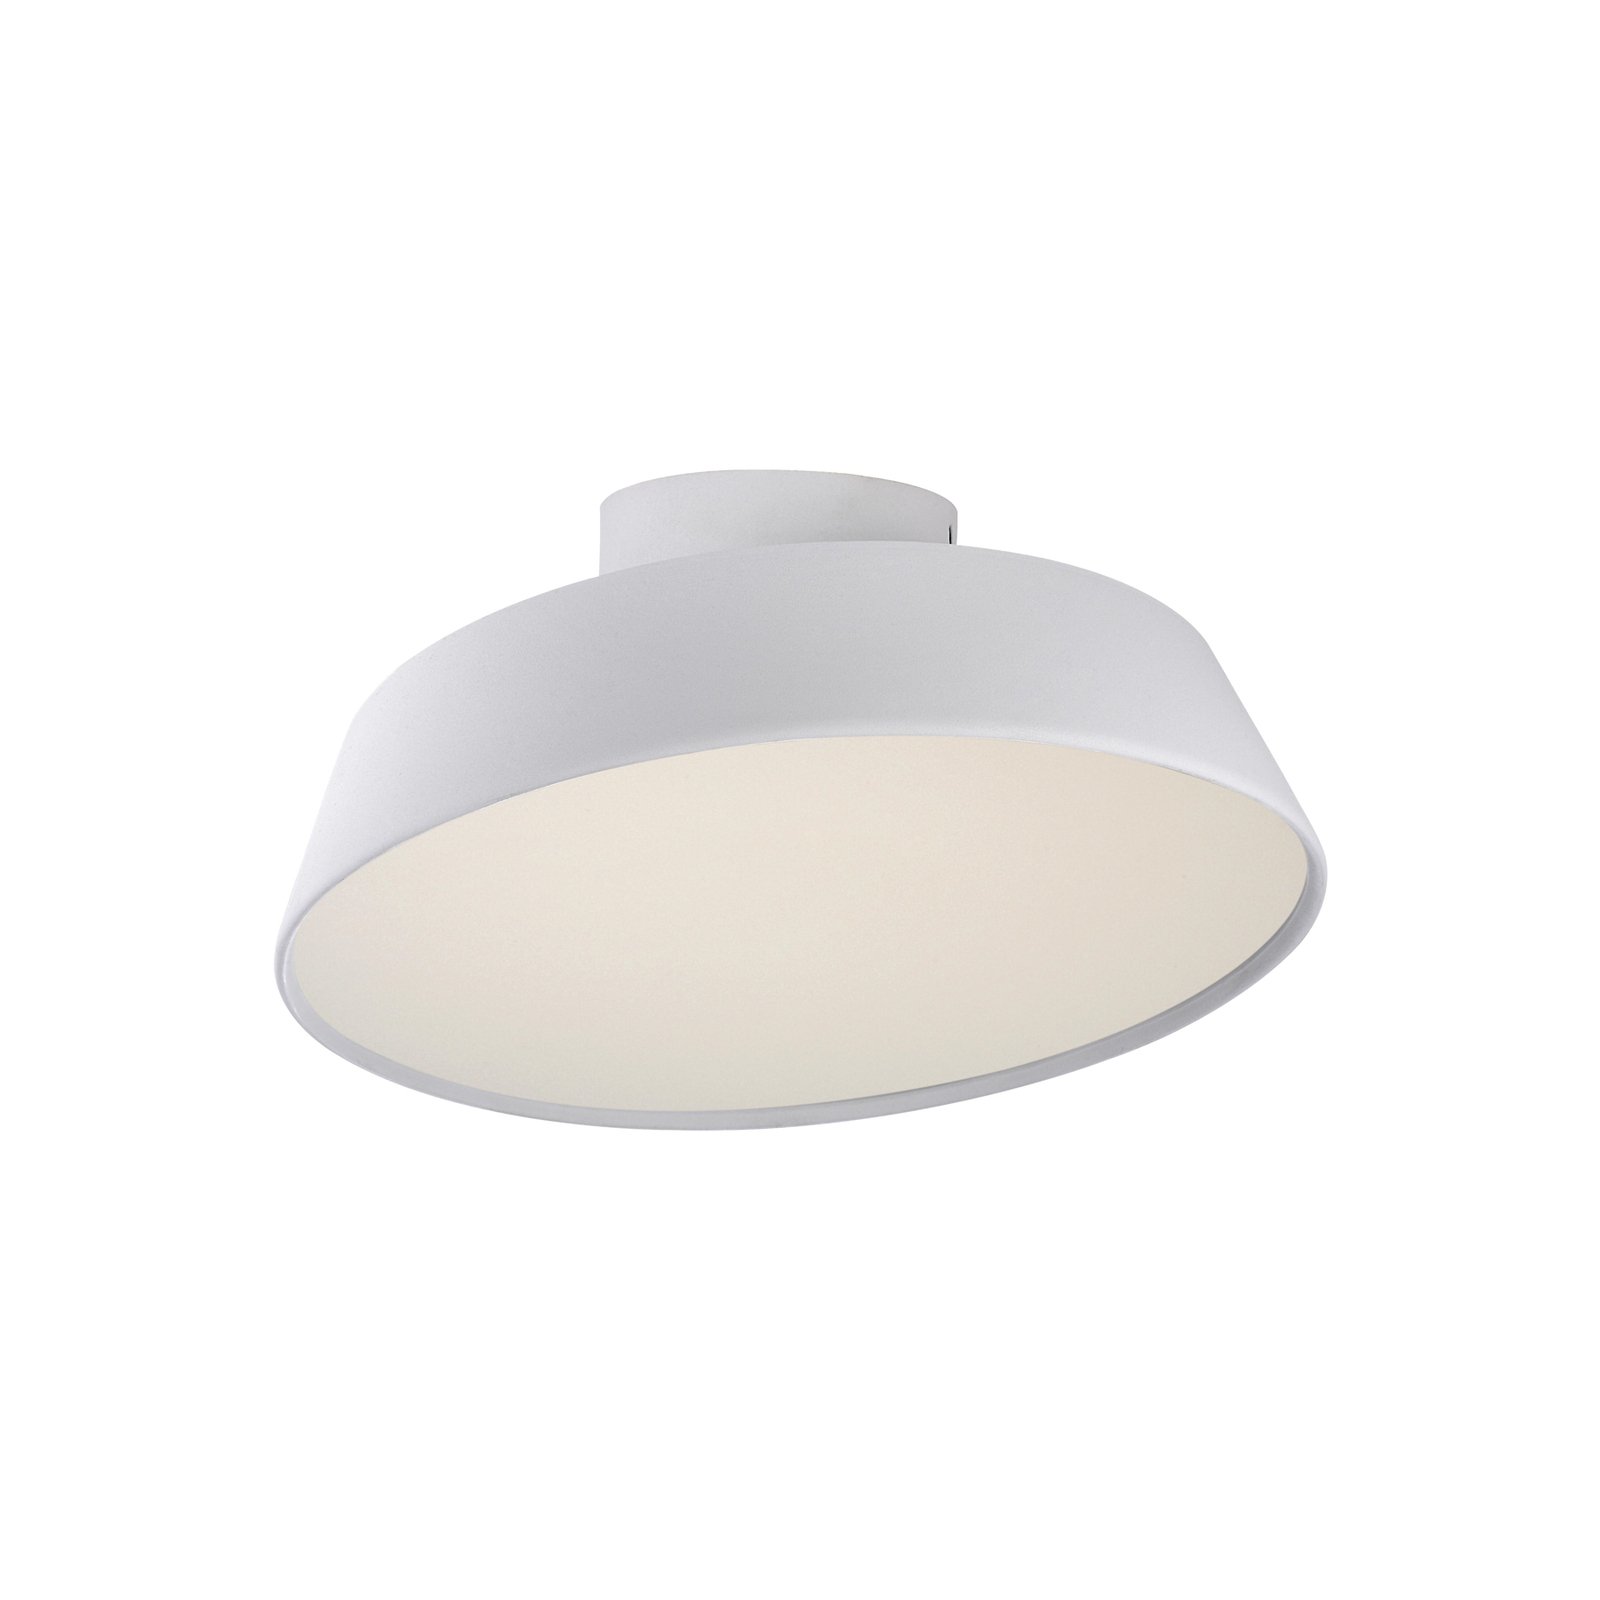 LED-taklampe Kaito 2 Dim, hvit, Ø 30 cm, dimbar